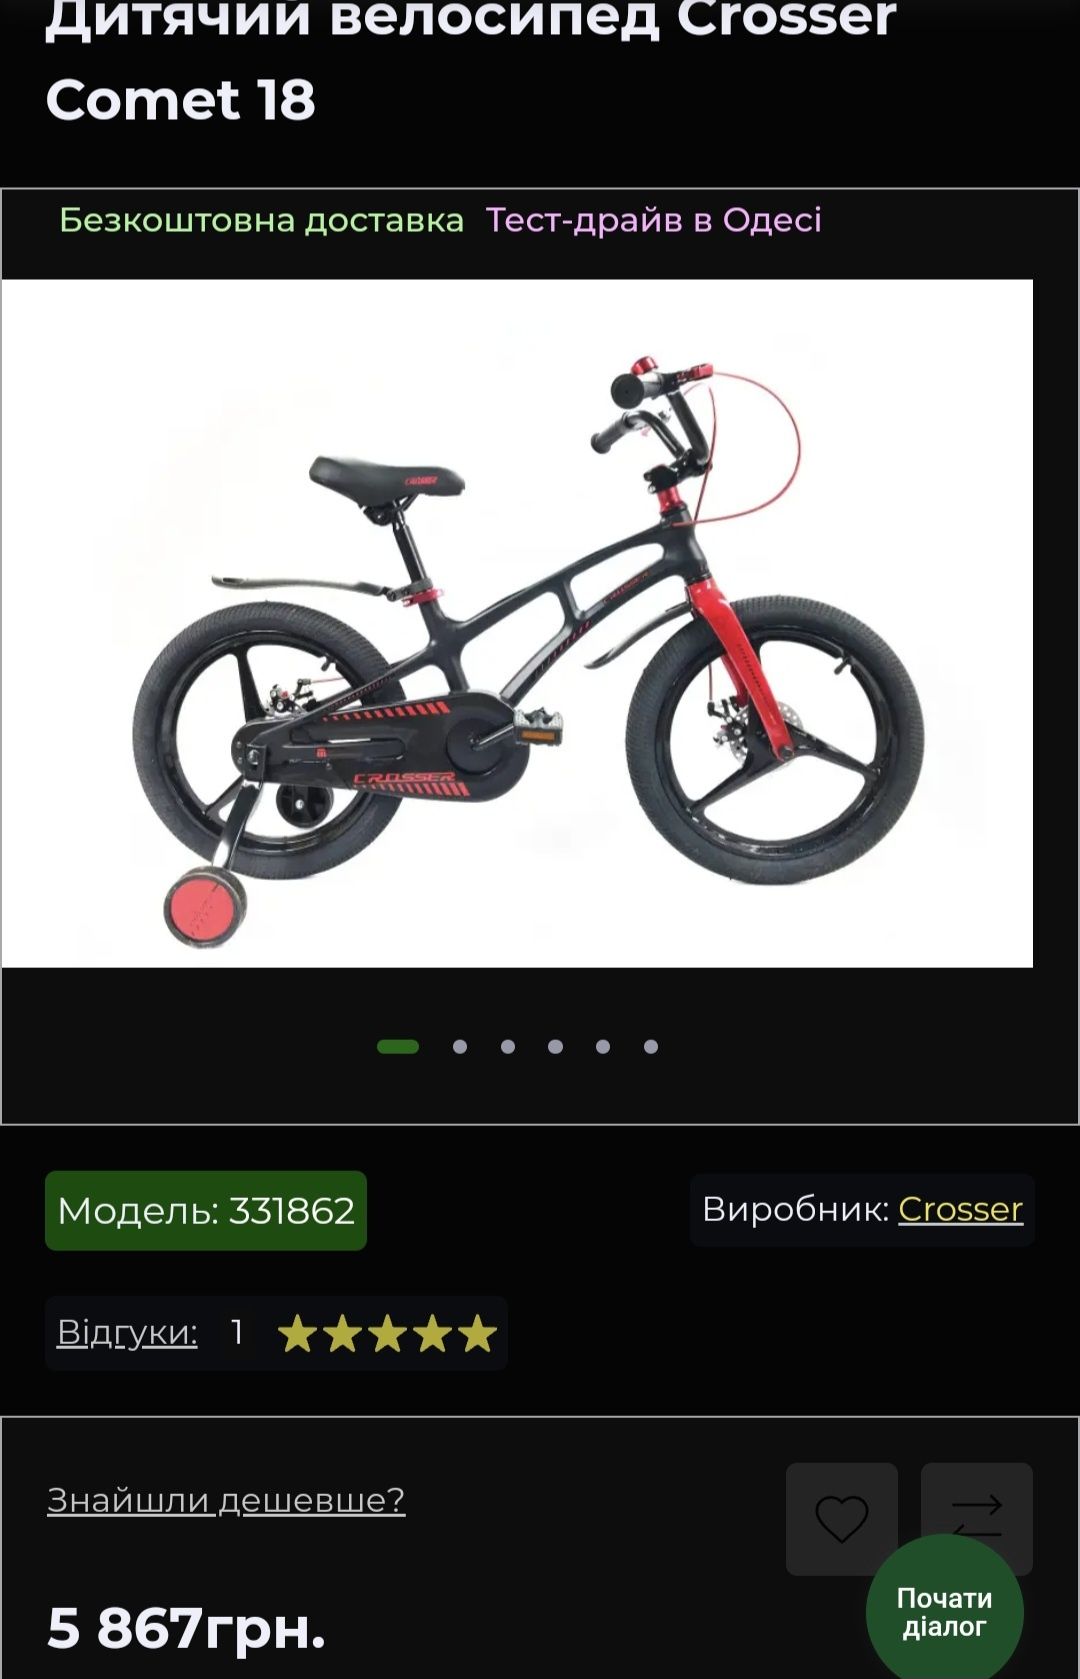 Дитячий велосипед Crosser Comet 18